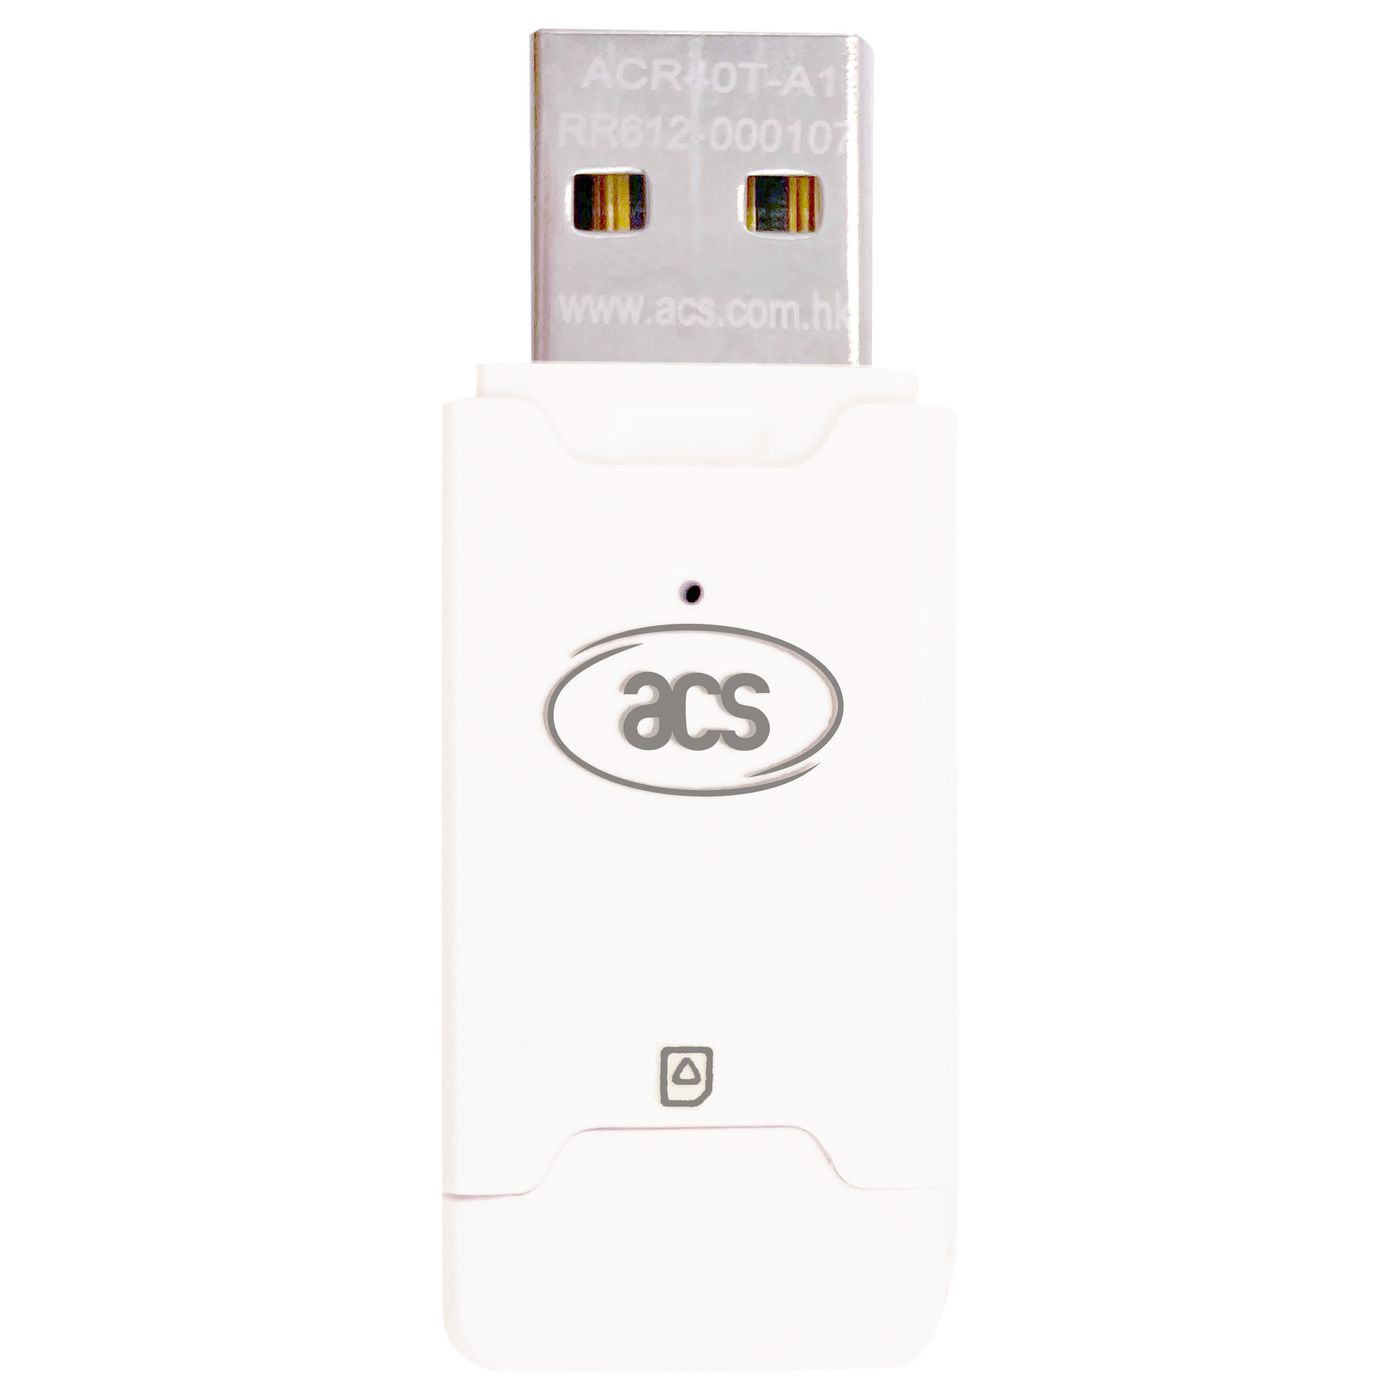 ACS ACR40T-A1 W128177570 ACR40T Type-A USB SIM-Sized 